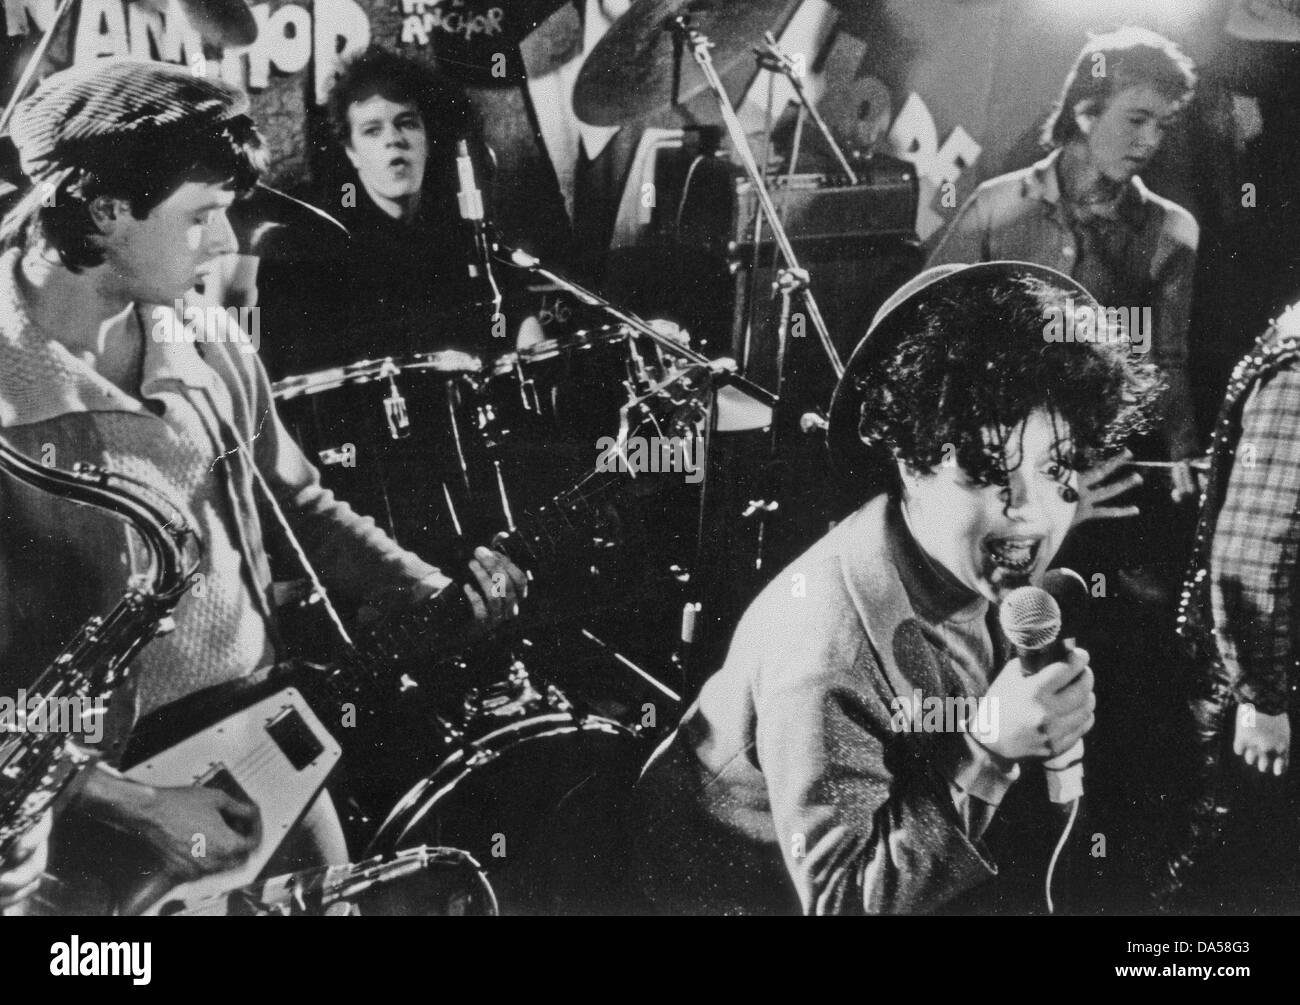 X-RAY SPEX Promotional photo de groupe punk Anglais vers 1978 avec le Poly Styrene sur chant Banque D'Images